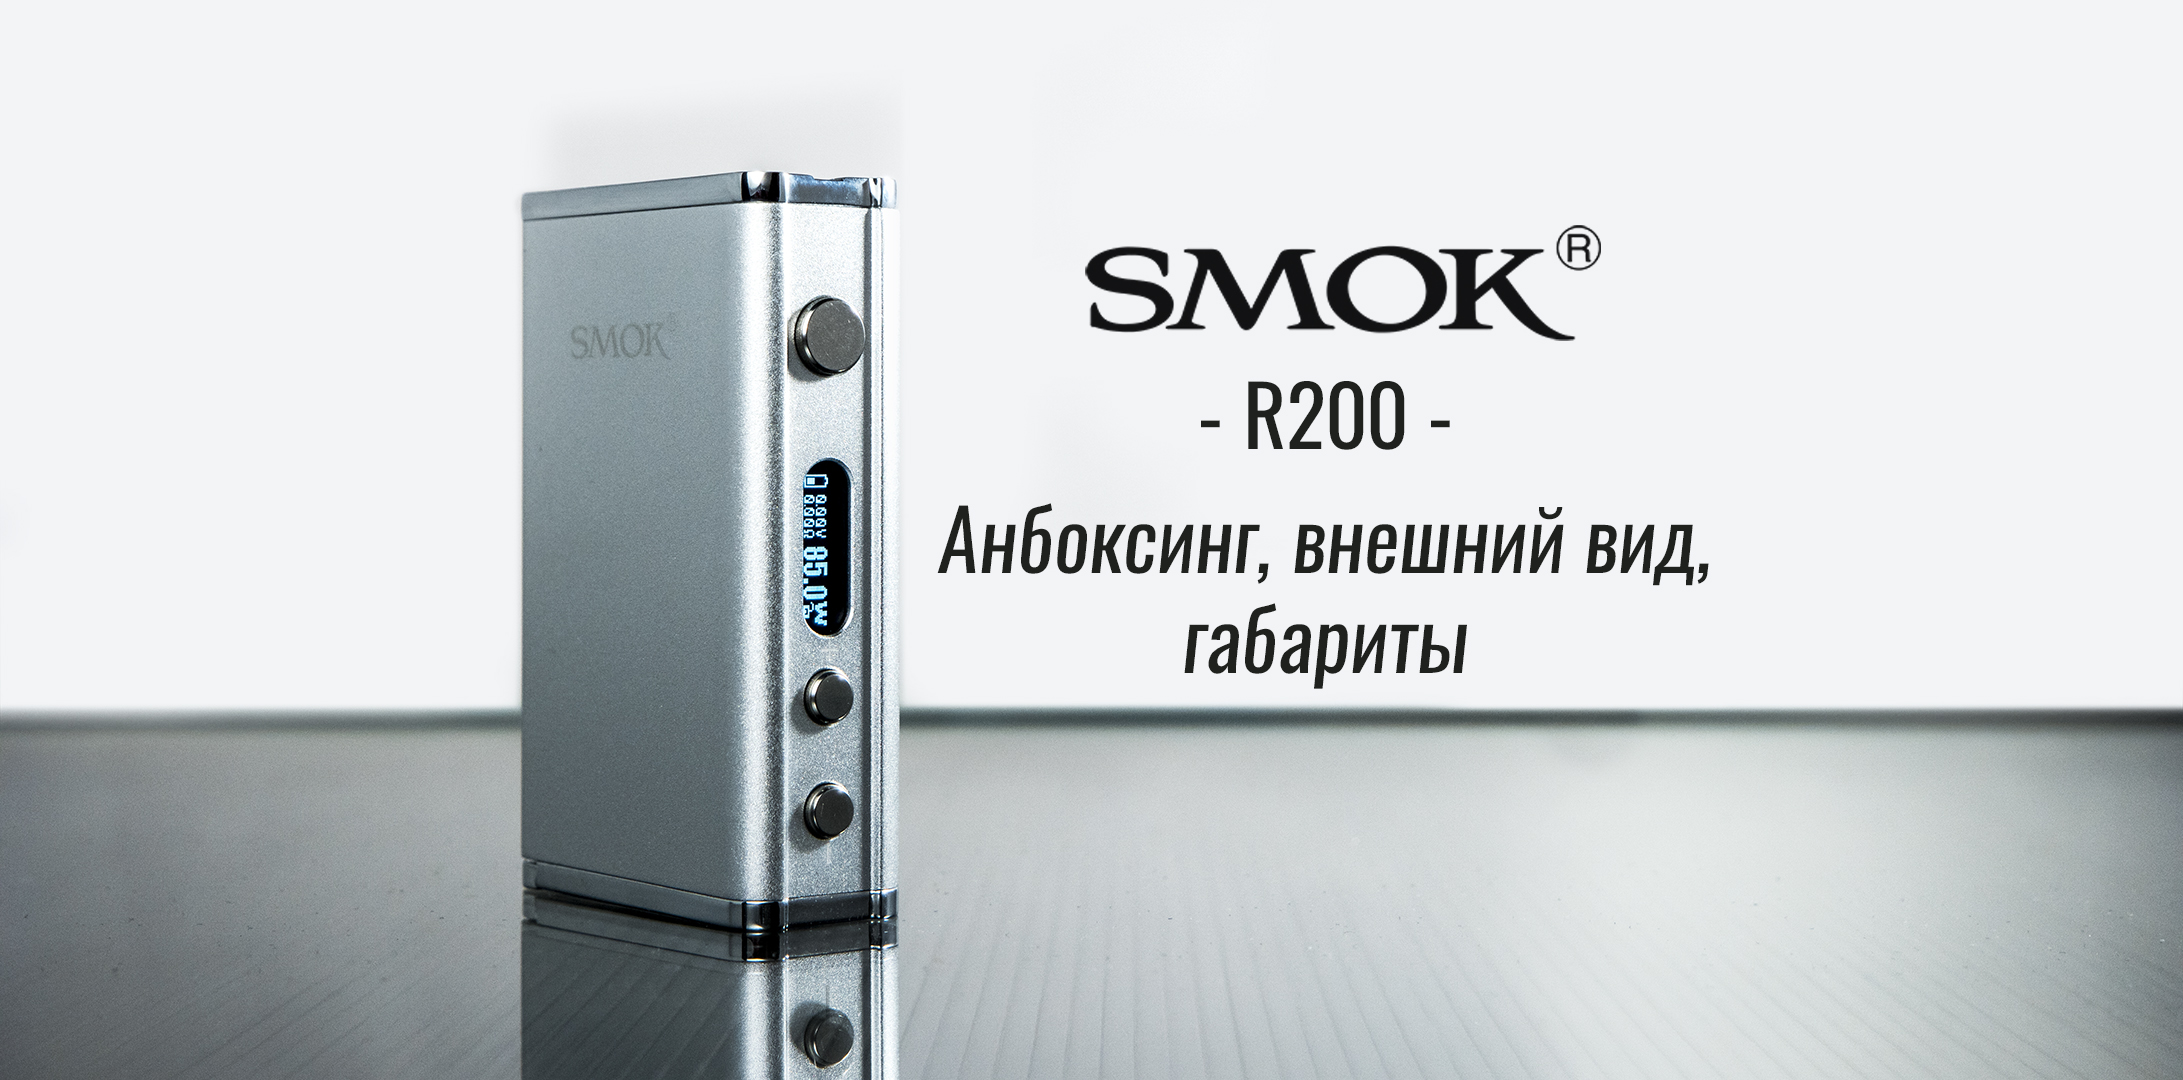 SMOK R200 - Анбоксинг, сравнение габаритов с RX200 и Koopor 200W